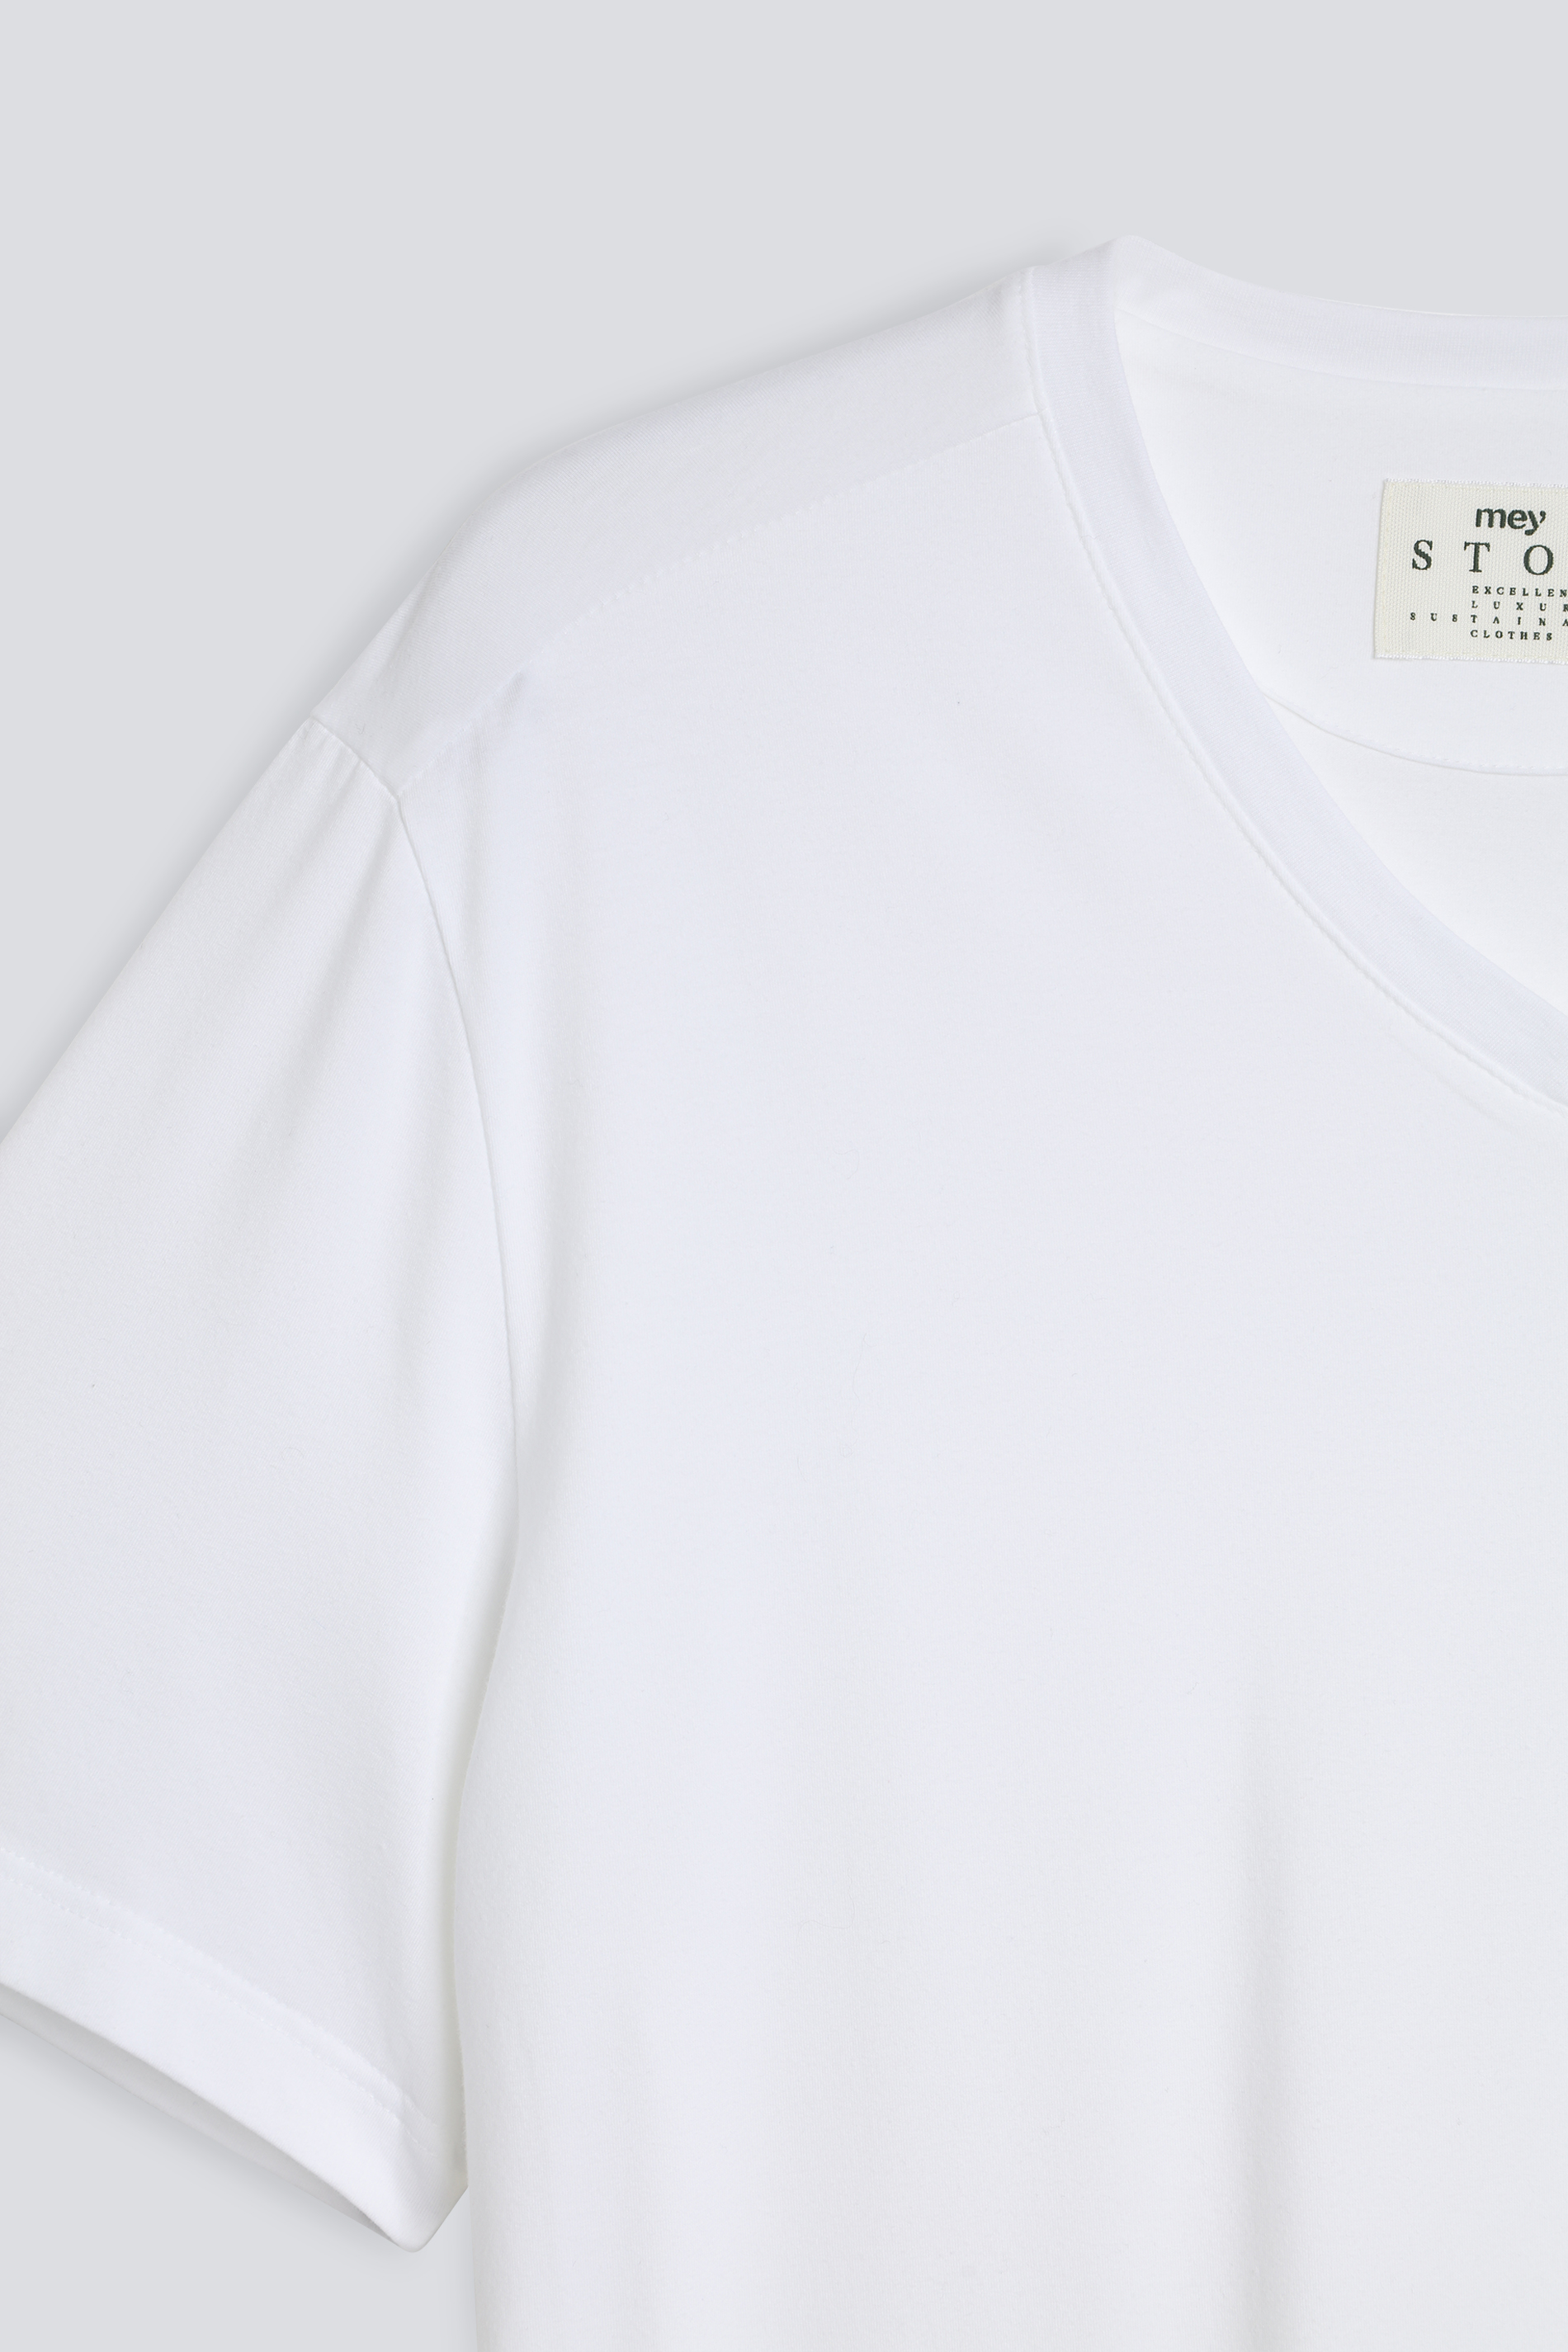 T-Shirt Serie Cotone Strech Detailansicht 01 | mey®